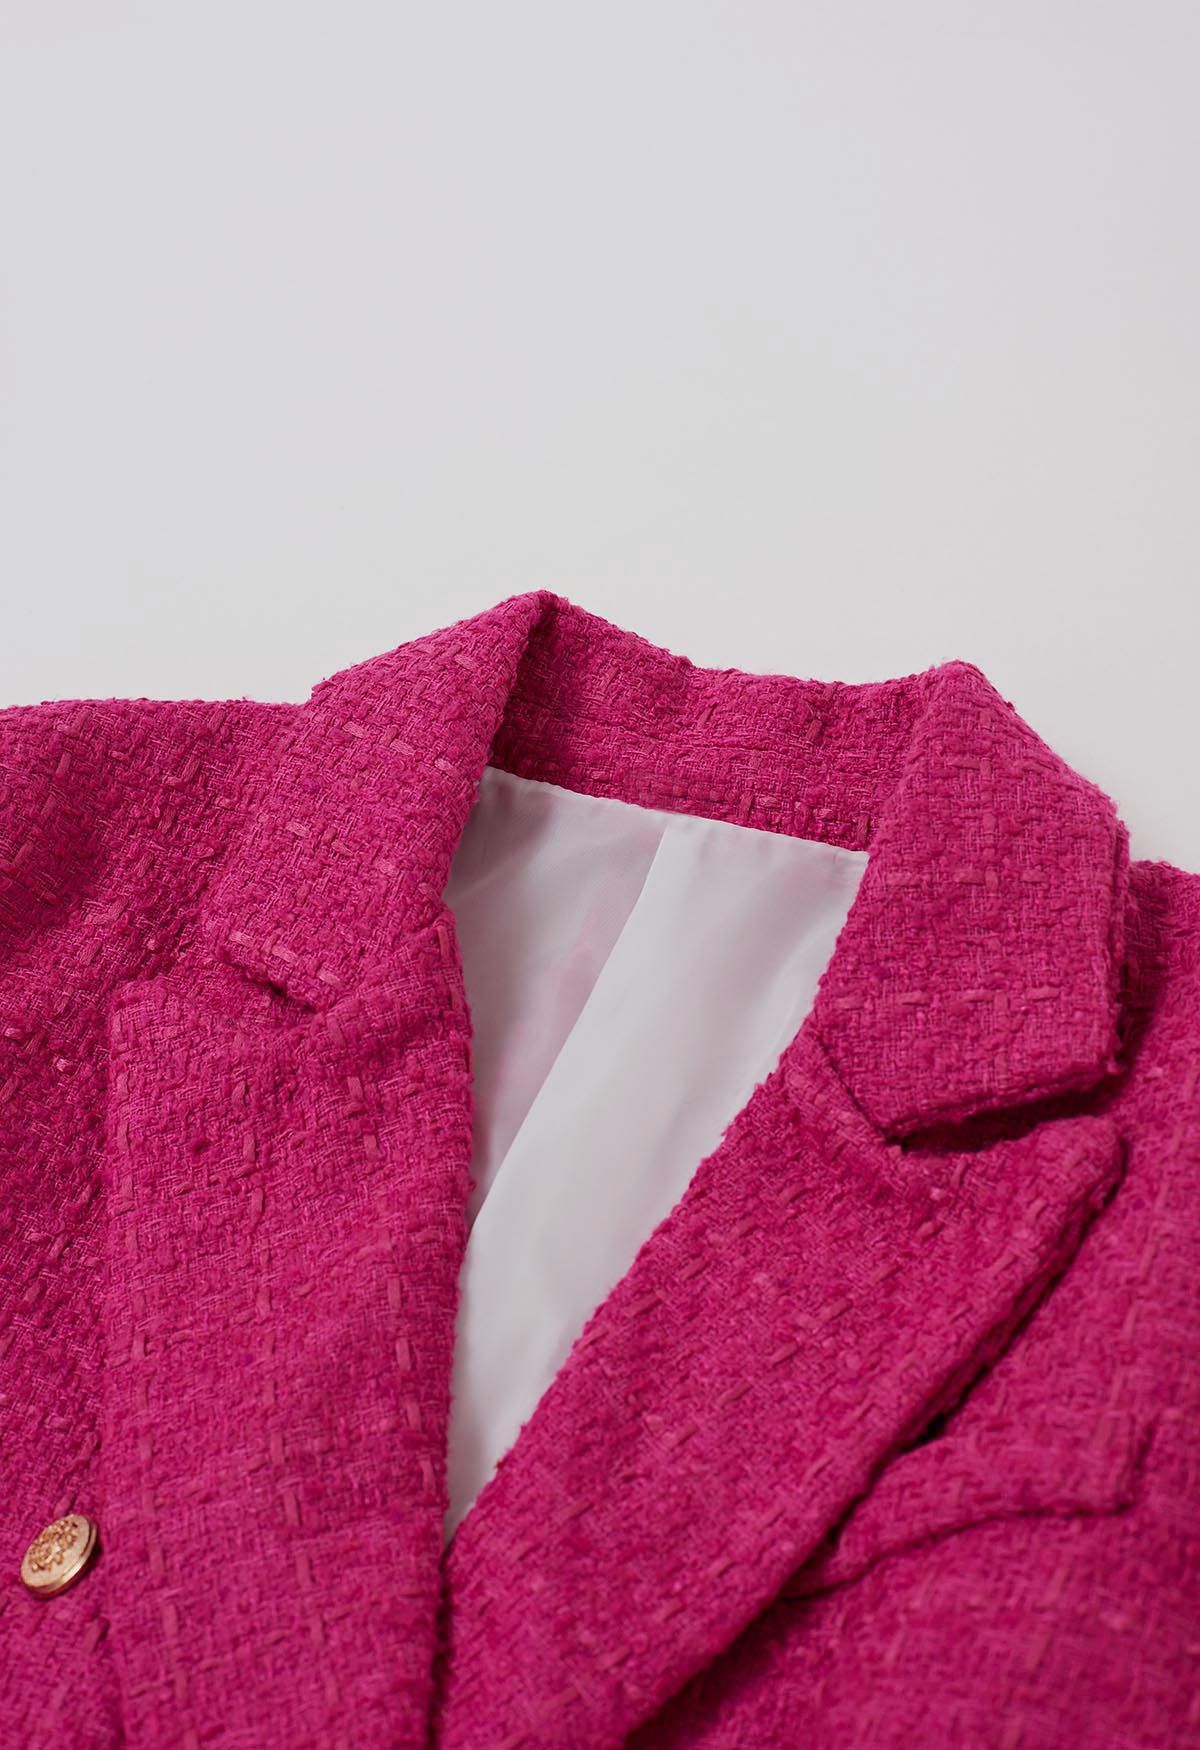 Karierter zweireihiger Tweed-Blazer in Pink